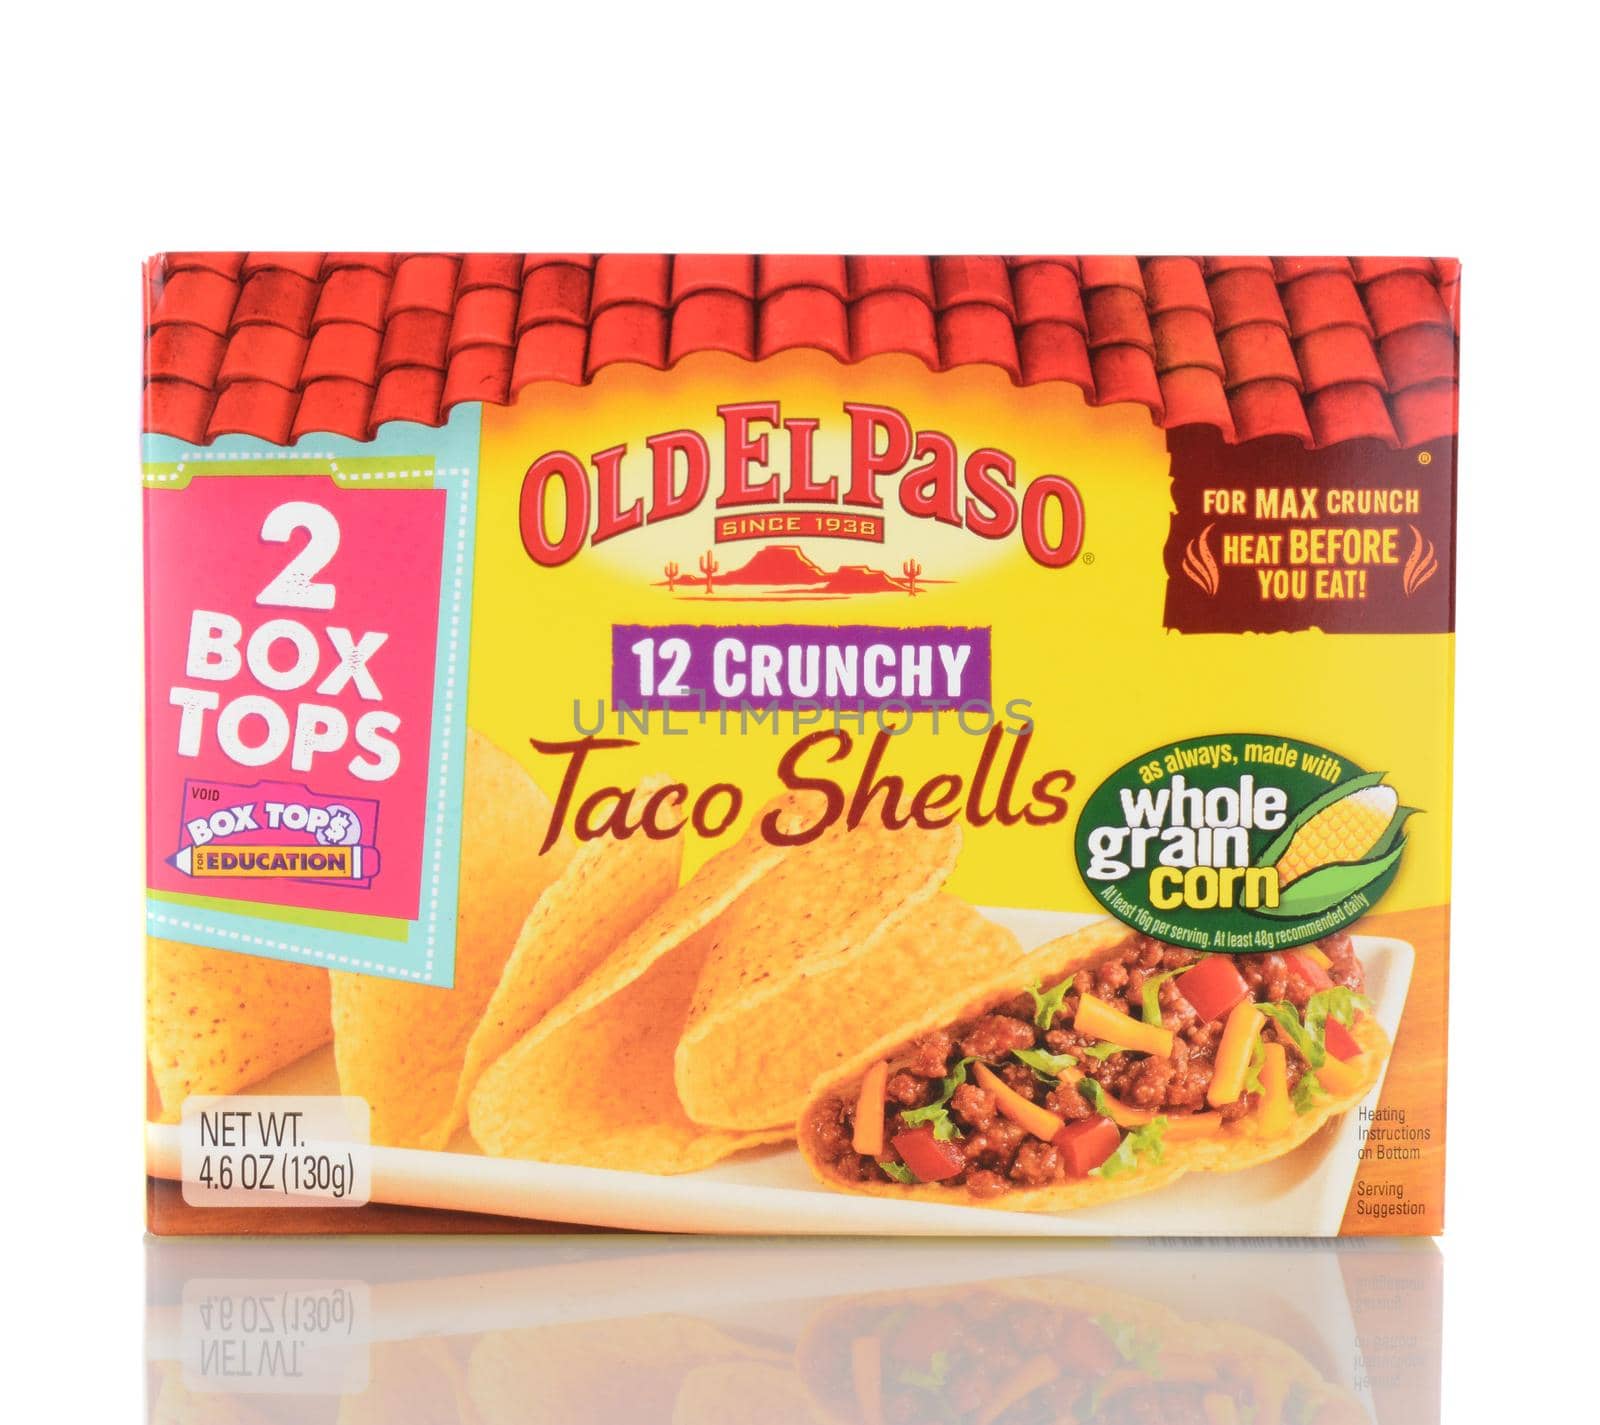 Old El Paso Taco Shells by sCukrov